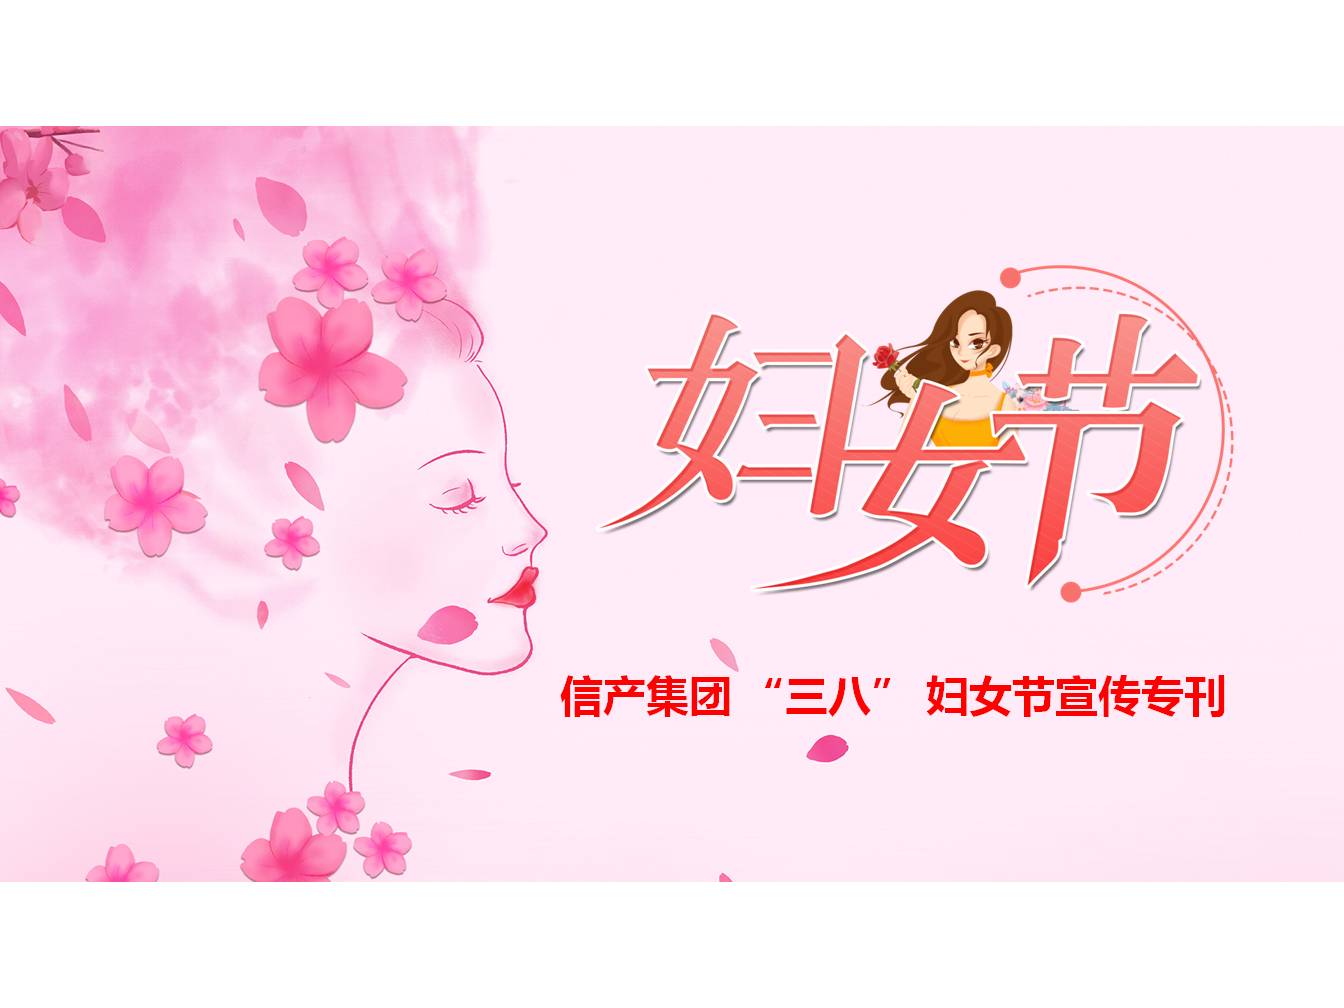 米乐M6在线注册(中国)有限公司 “三八” 妇女节宣传专刊